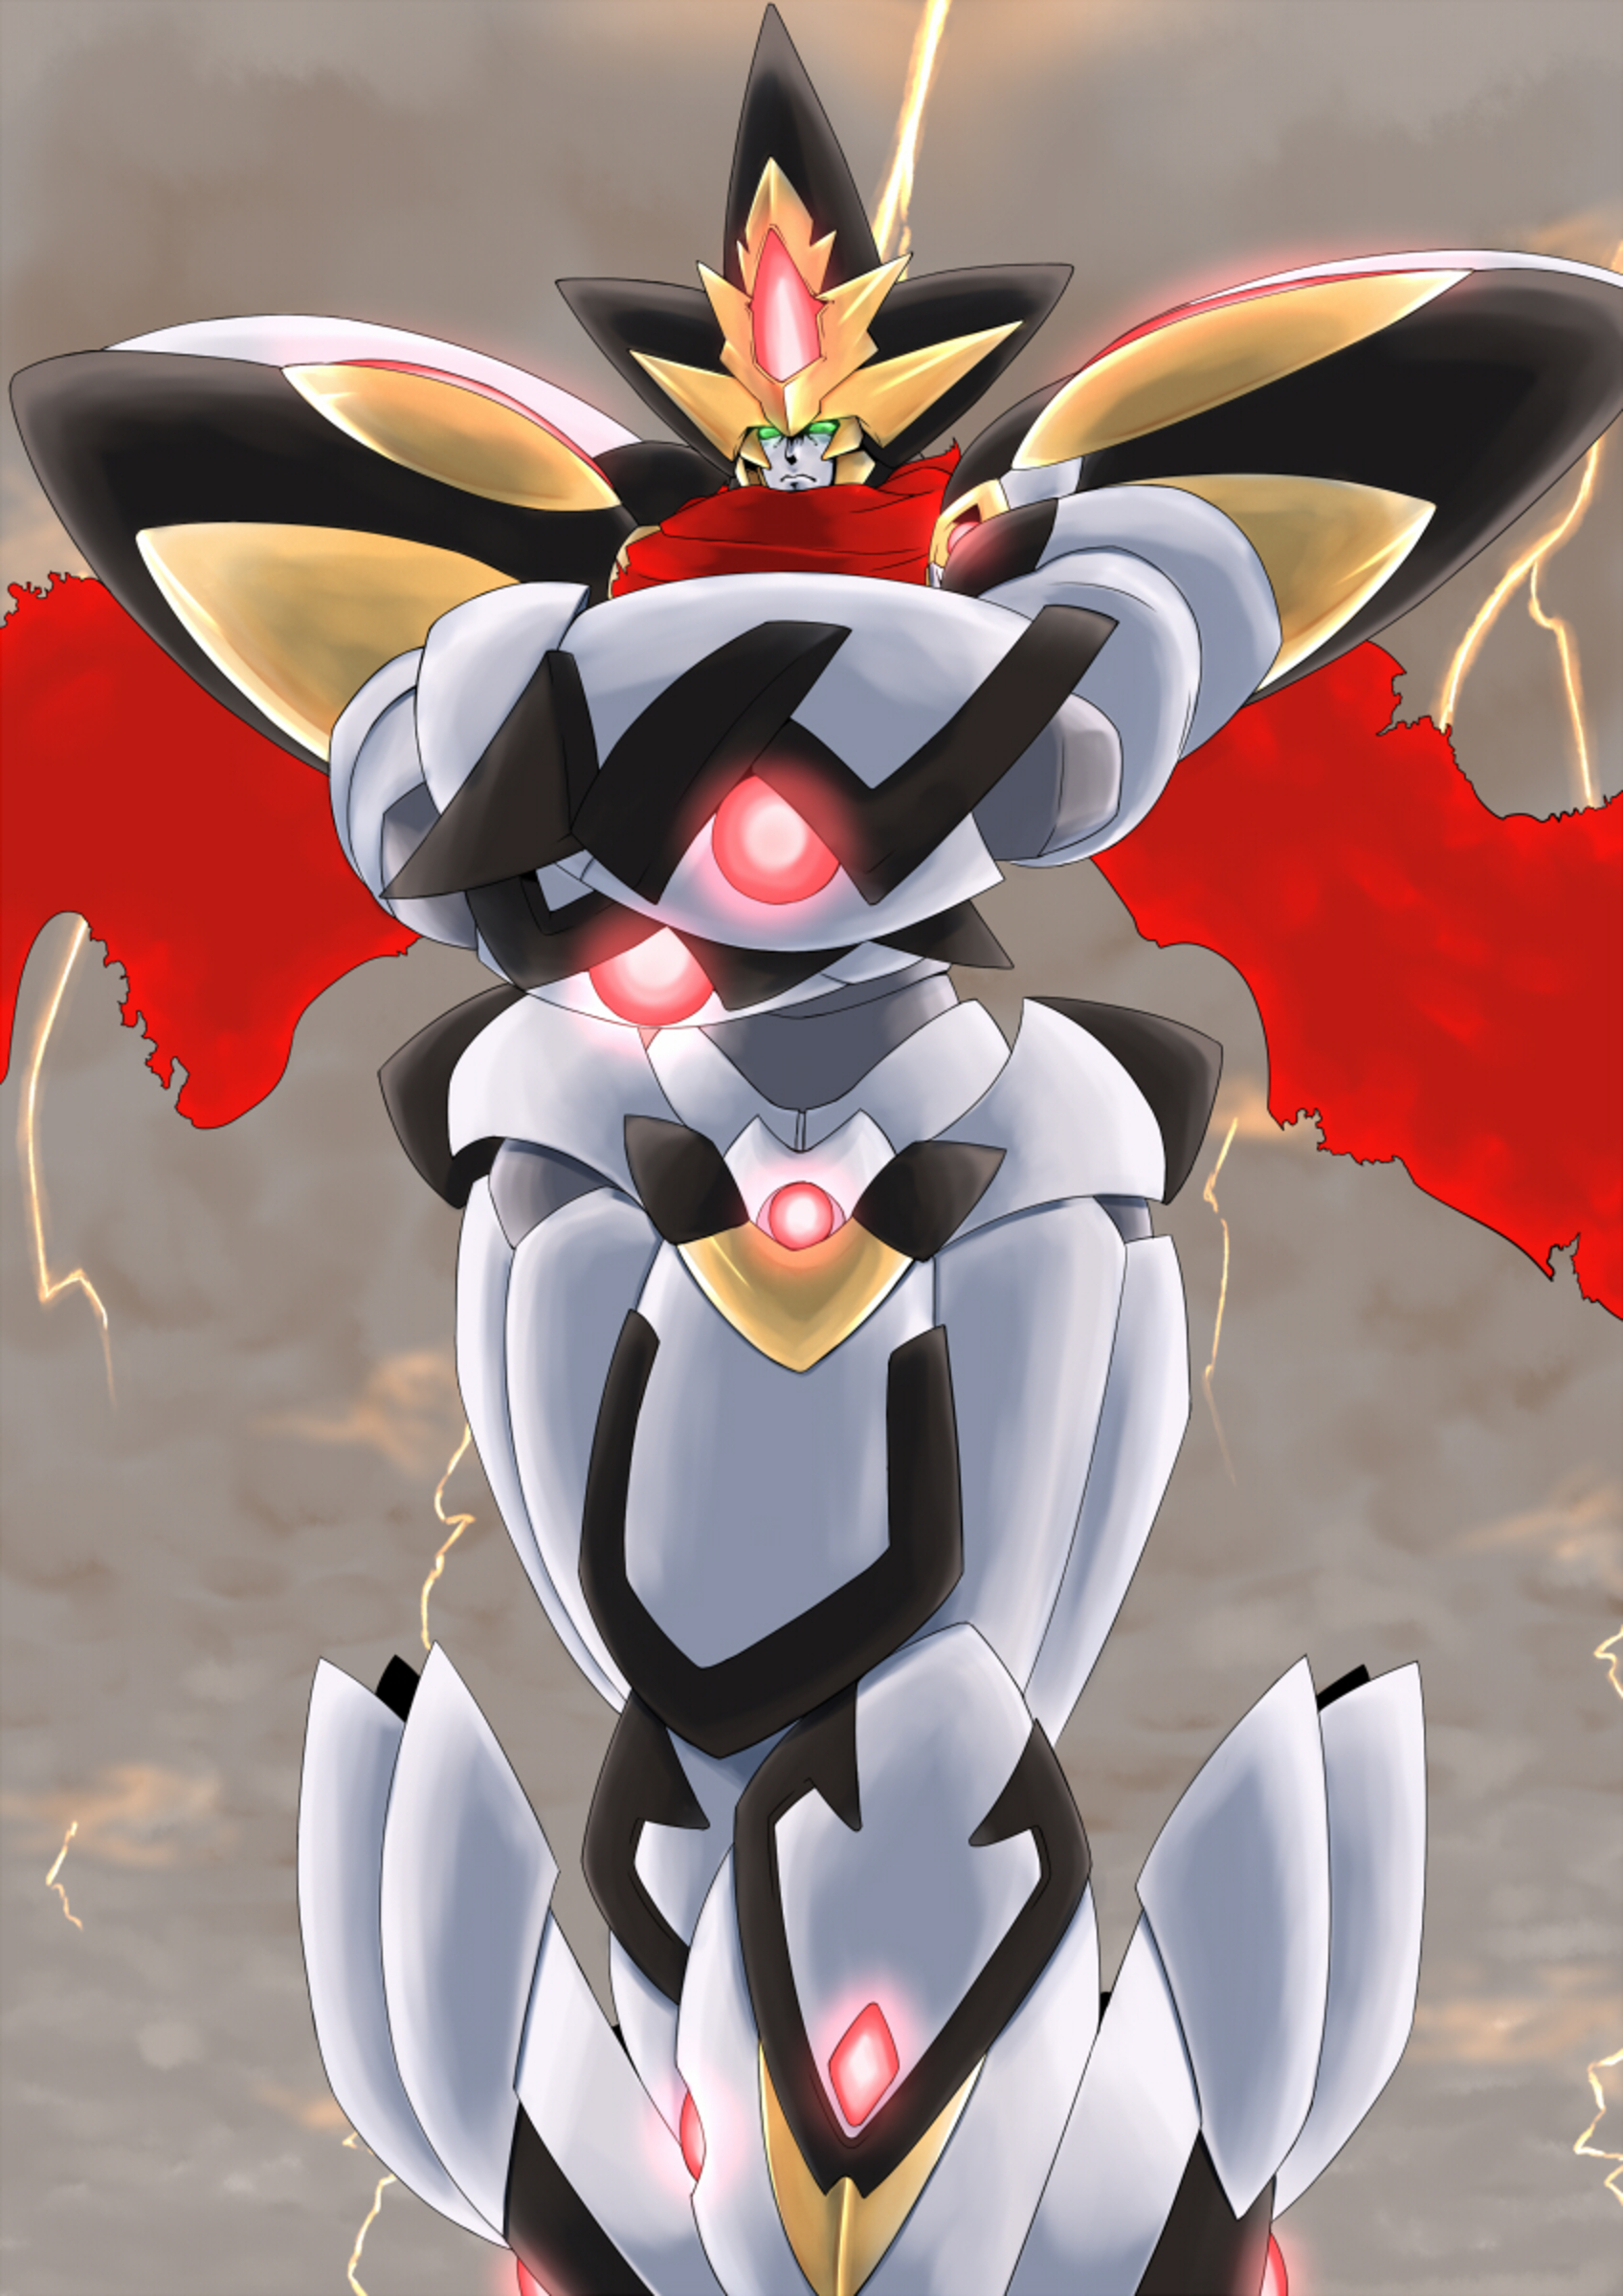 Anime 1696x2400 RaiOh Super Robot Taisen mechs anime artwork digital art fan art